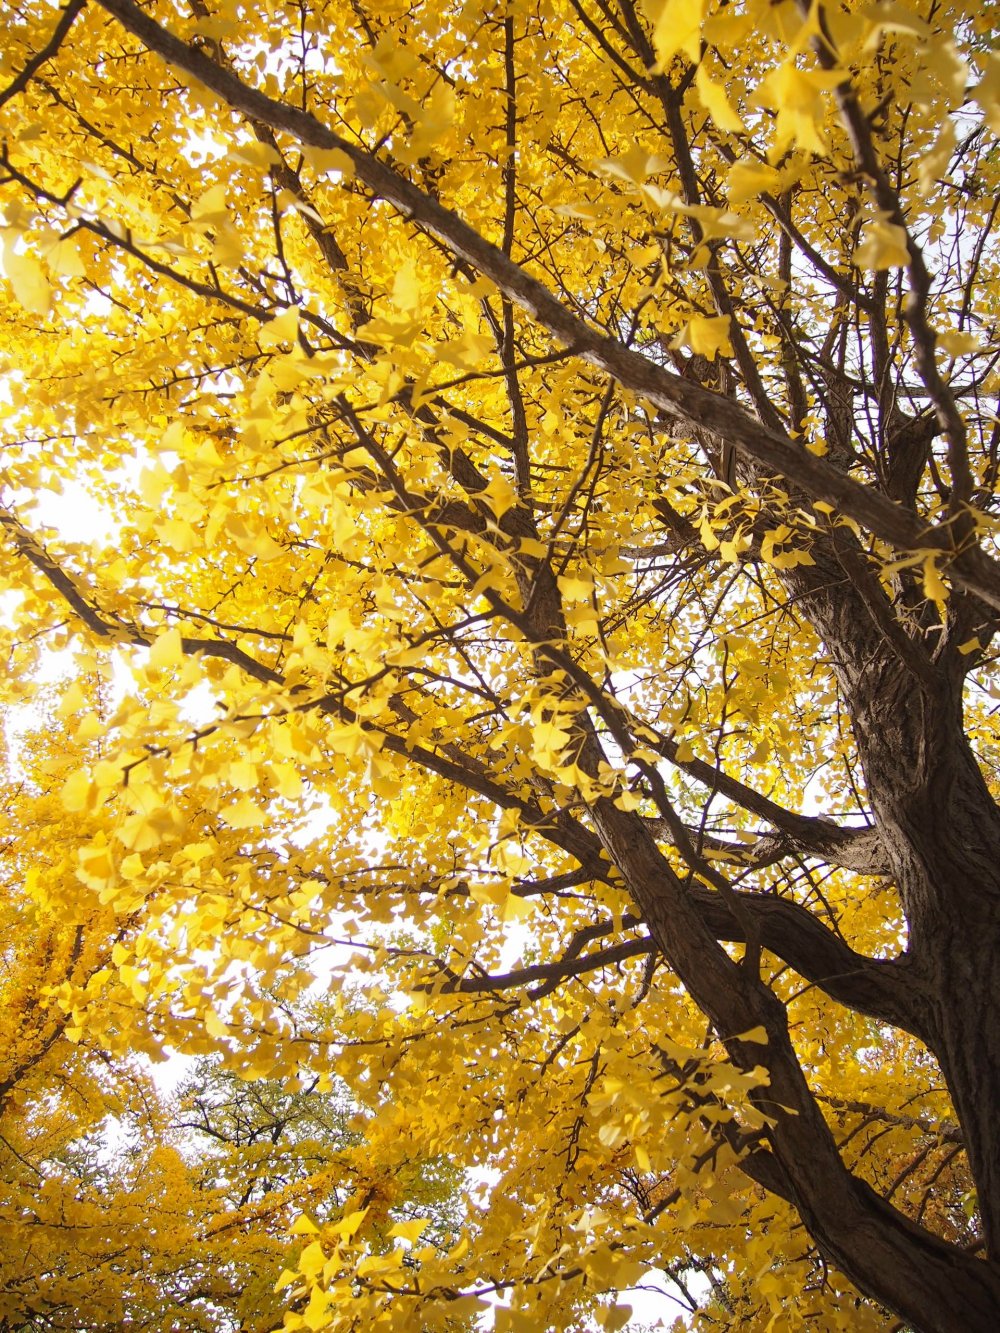 황금색 잎들의 아름다운 광경